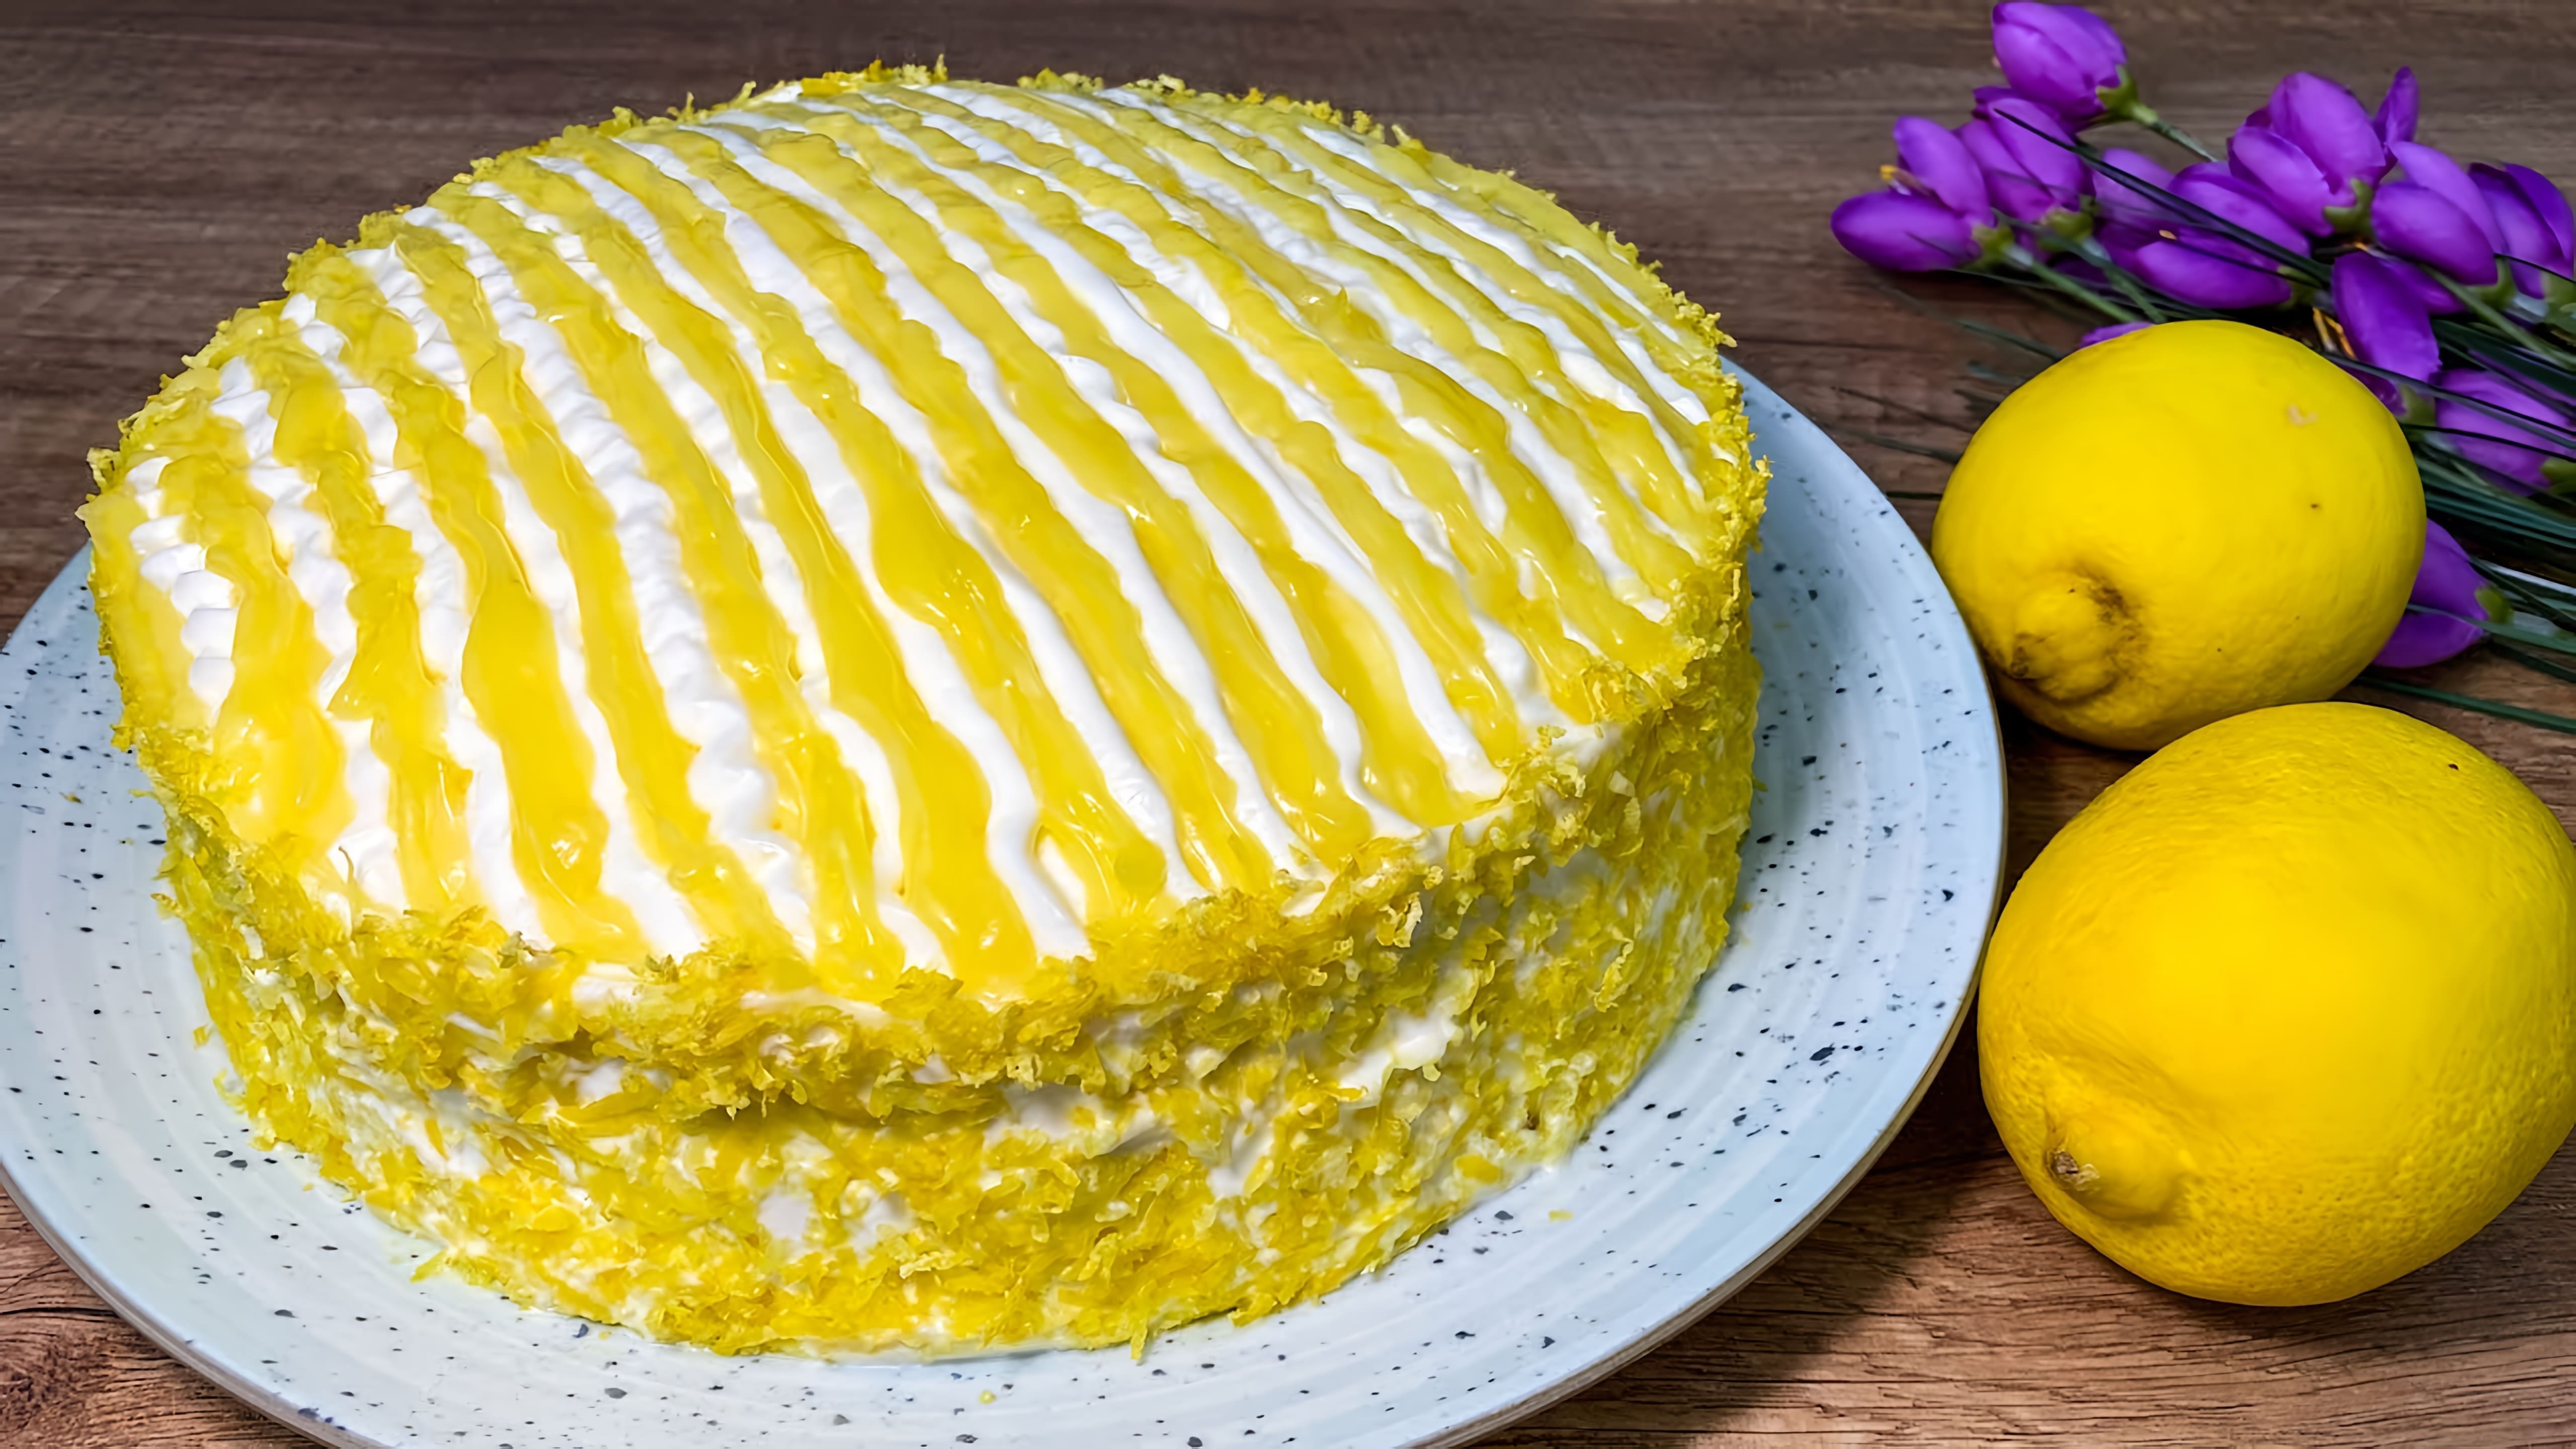 В этом видео демонстрируется процесс приготовления лимонного торта